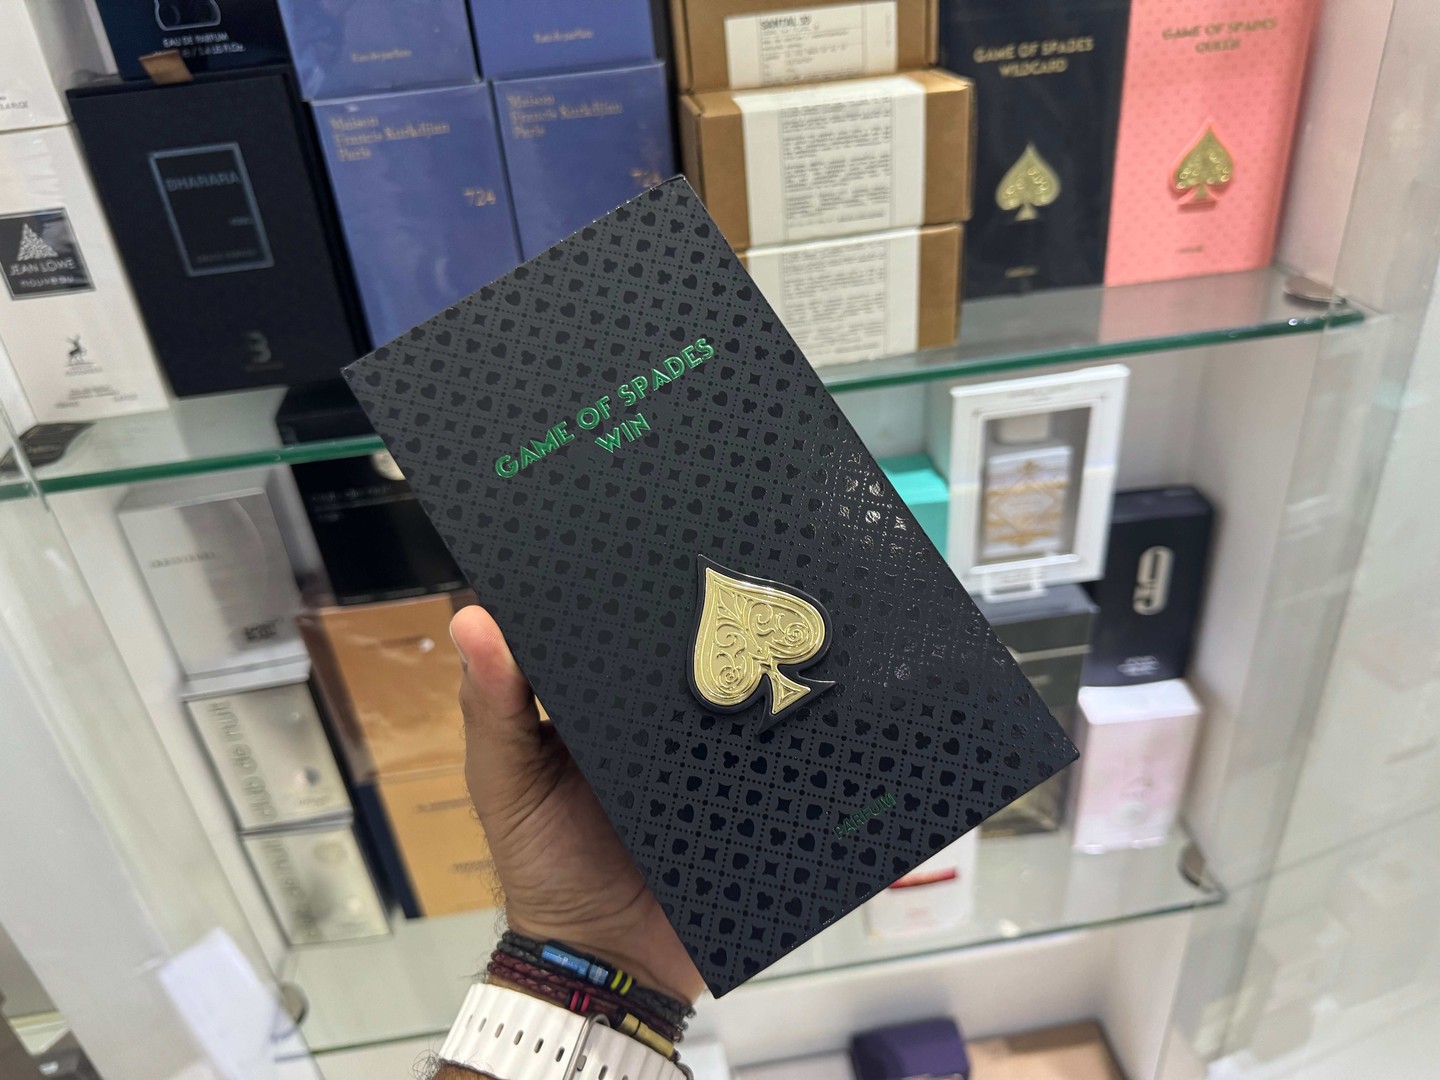 joyas, relojes y accesorios - Perfume Jo Milano Game of Spades WIN Nuevos, Originales $ 5,500 NEG| TIENDA